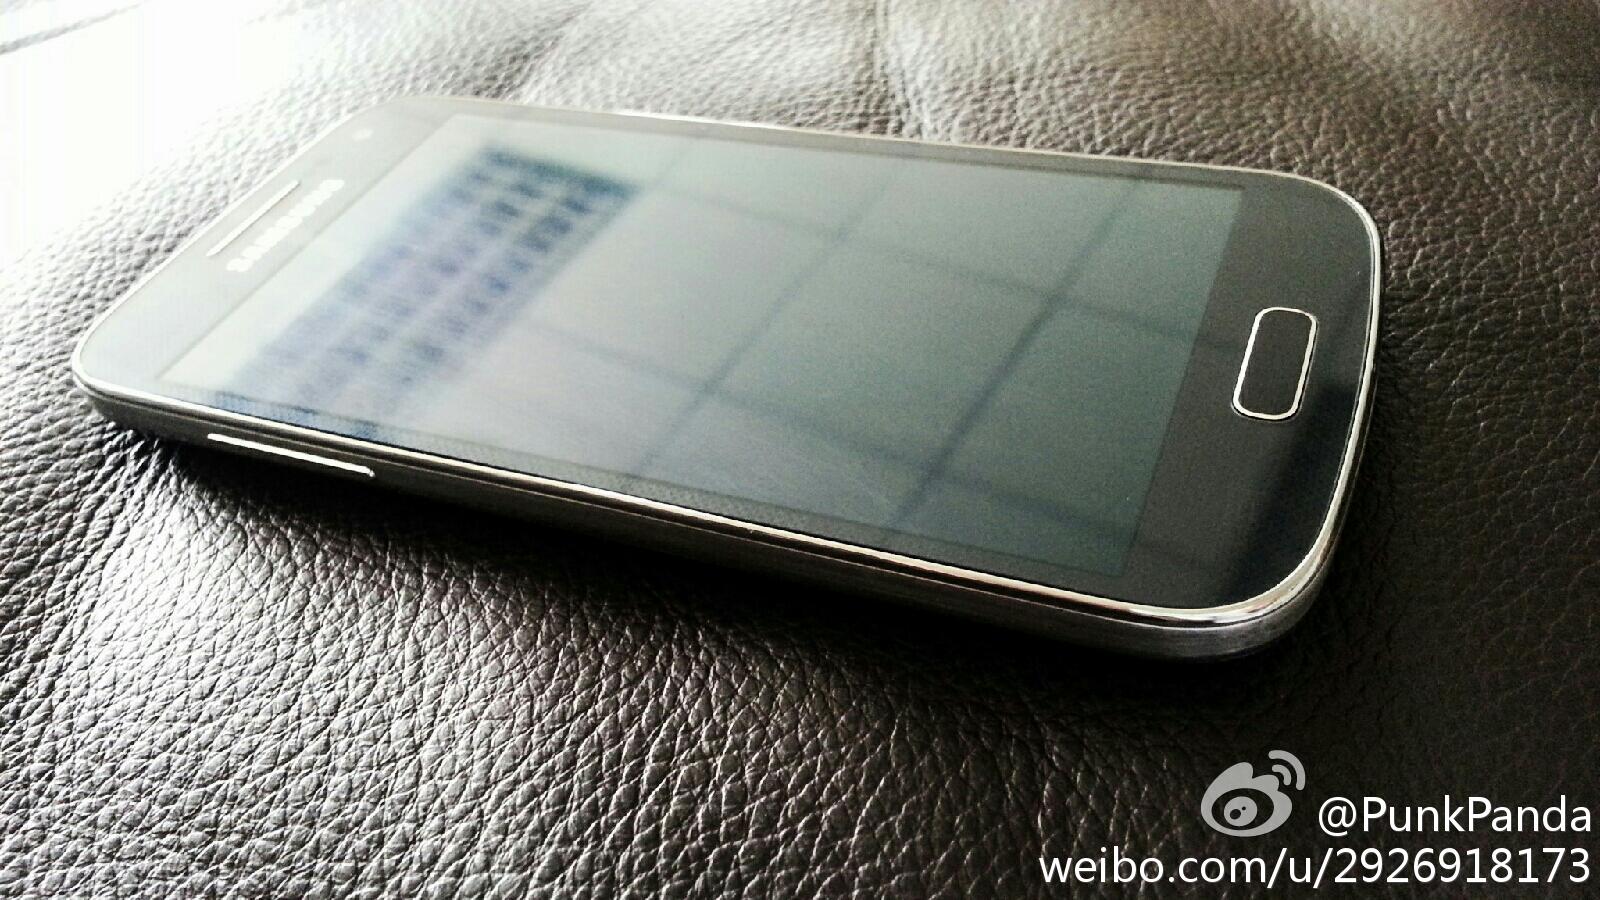 Thêm hình ảnh xác thực về smartphone Galaxy S4 mini 5